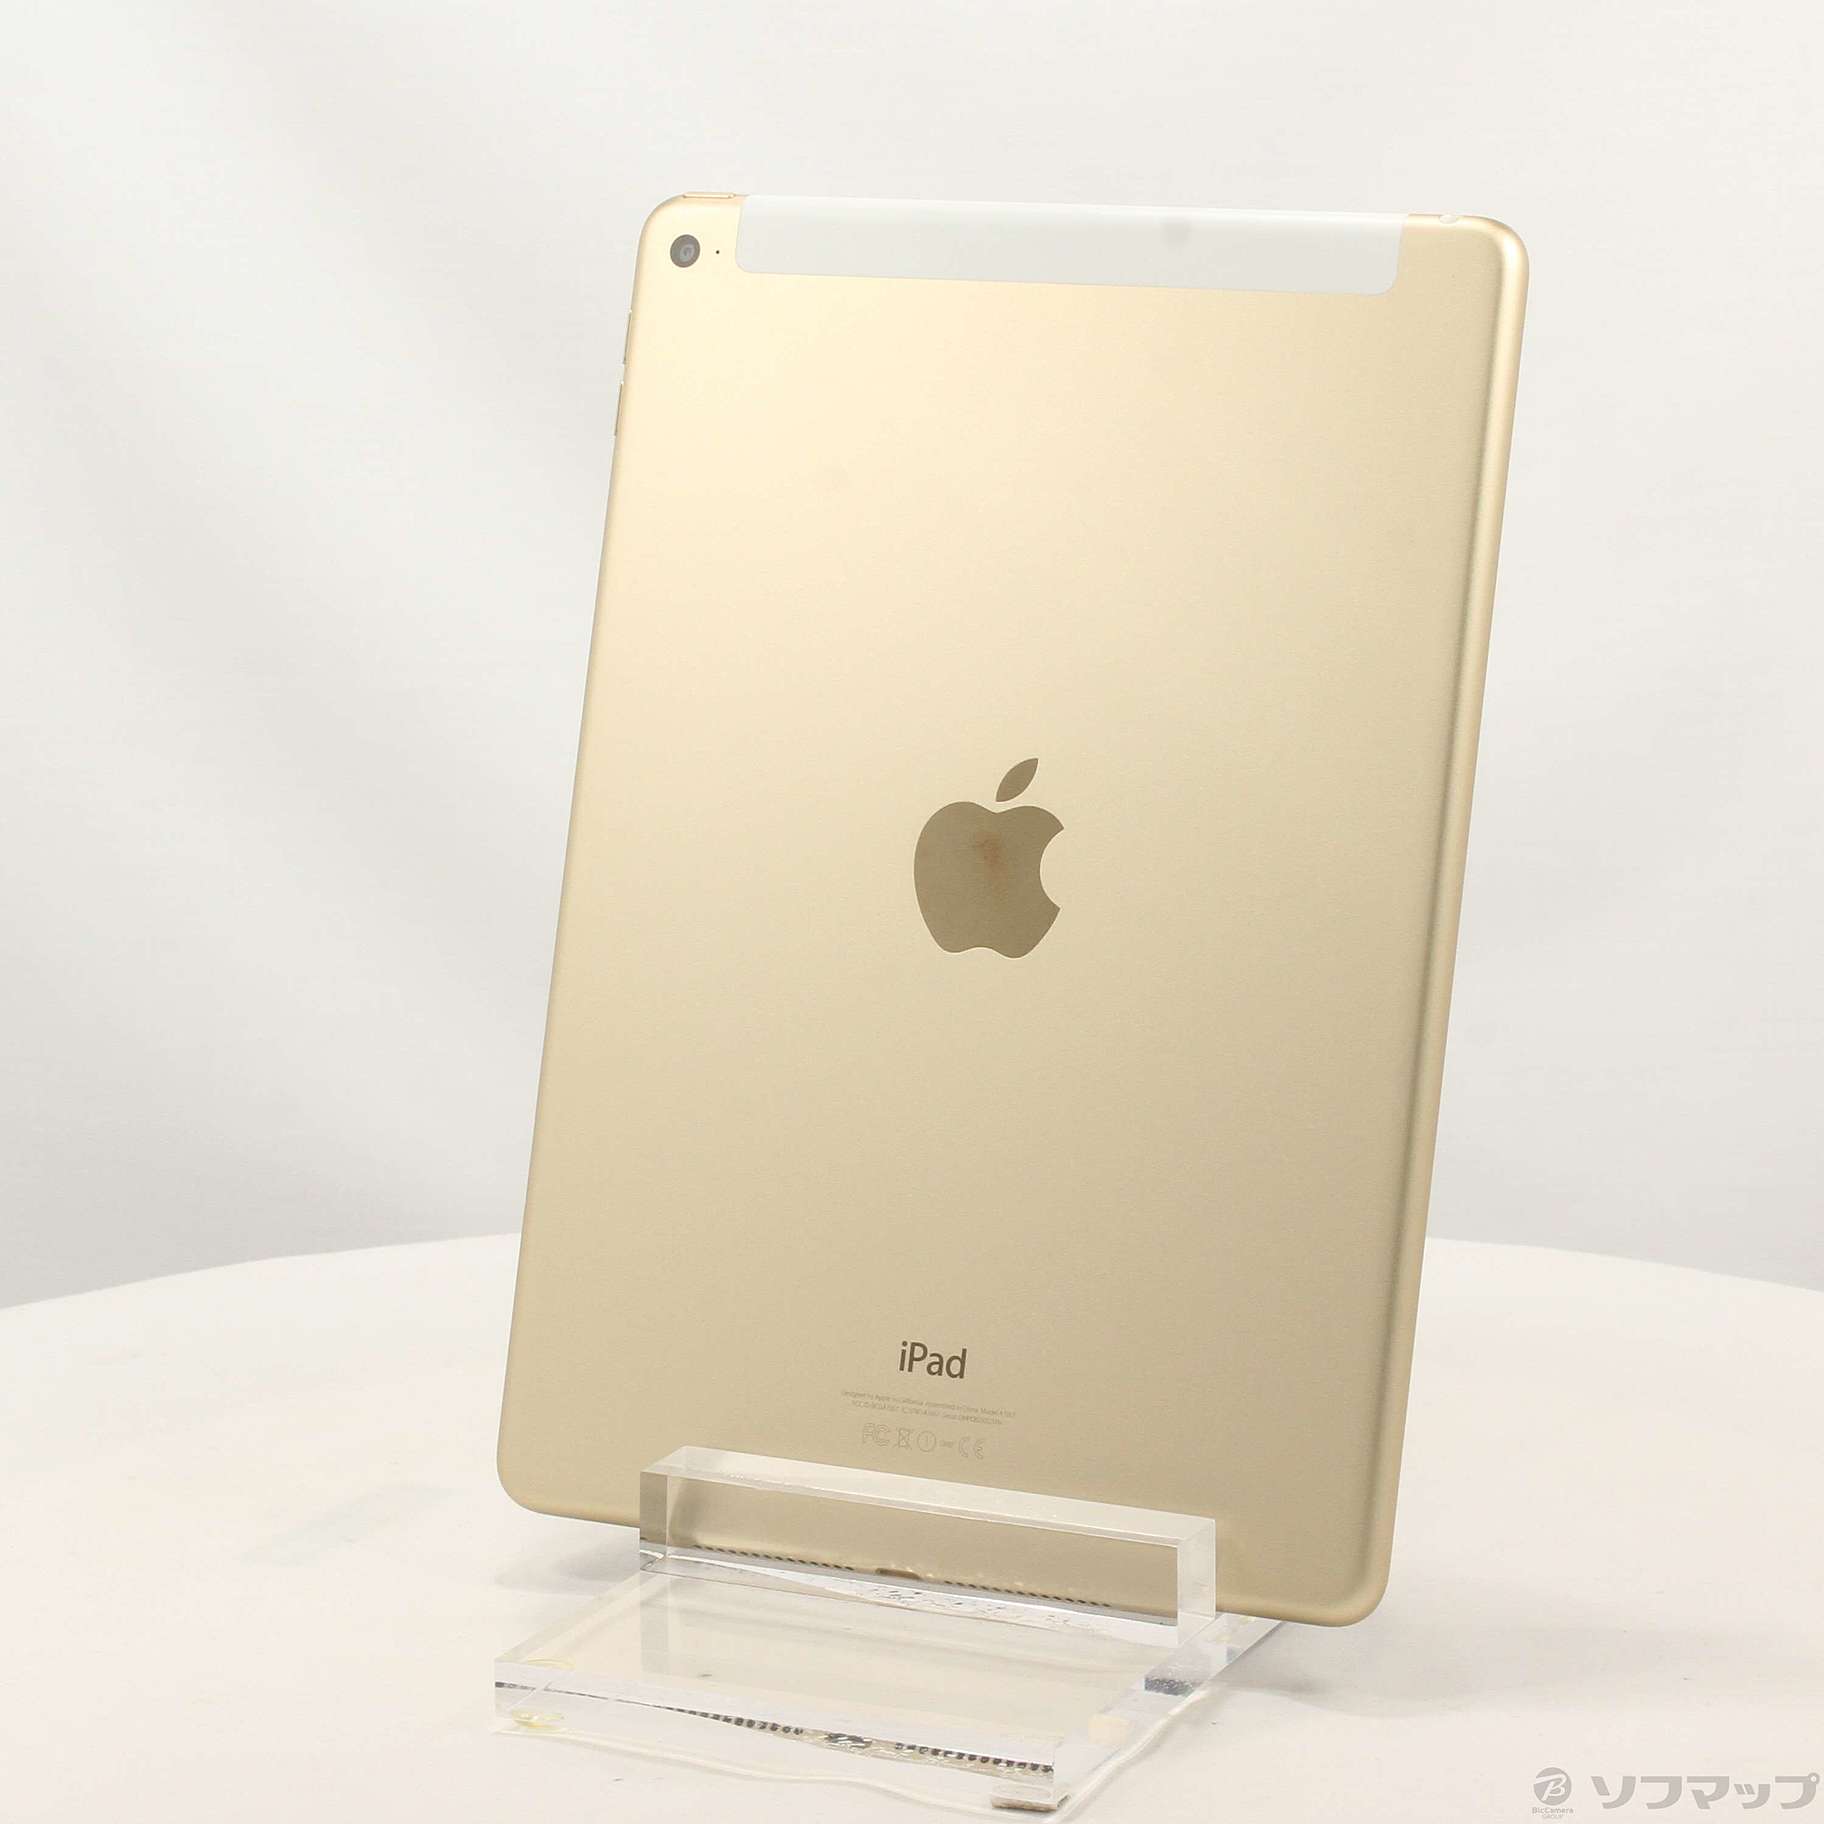 最高の品質の iPad docomo MH172J/A MH172J/A ドコモ iPad #8147 Apple ...